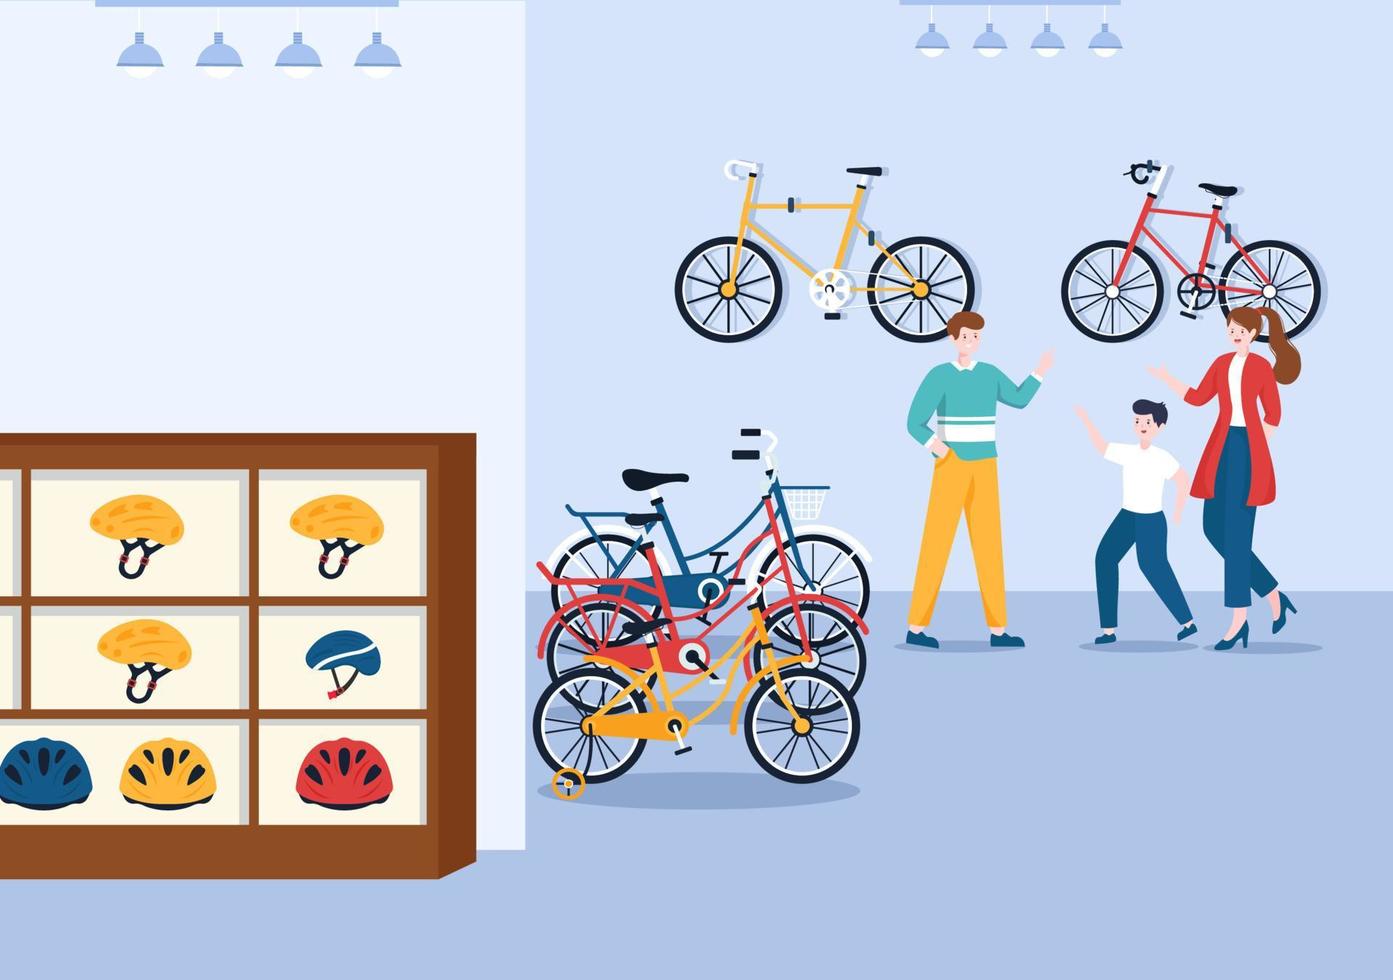 tienda de bicicletas con compradores que eligen ciclos, accesorios o equipos de engranajes para montar en una plantilla dibujada a mano ilustración plana de dibujos animados vector